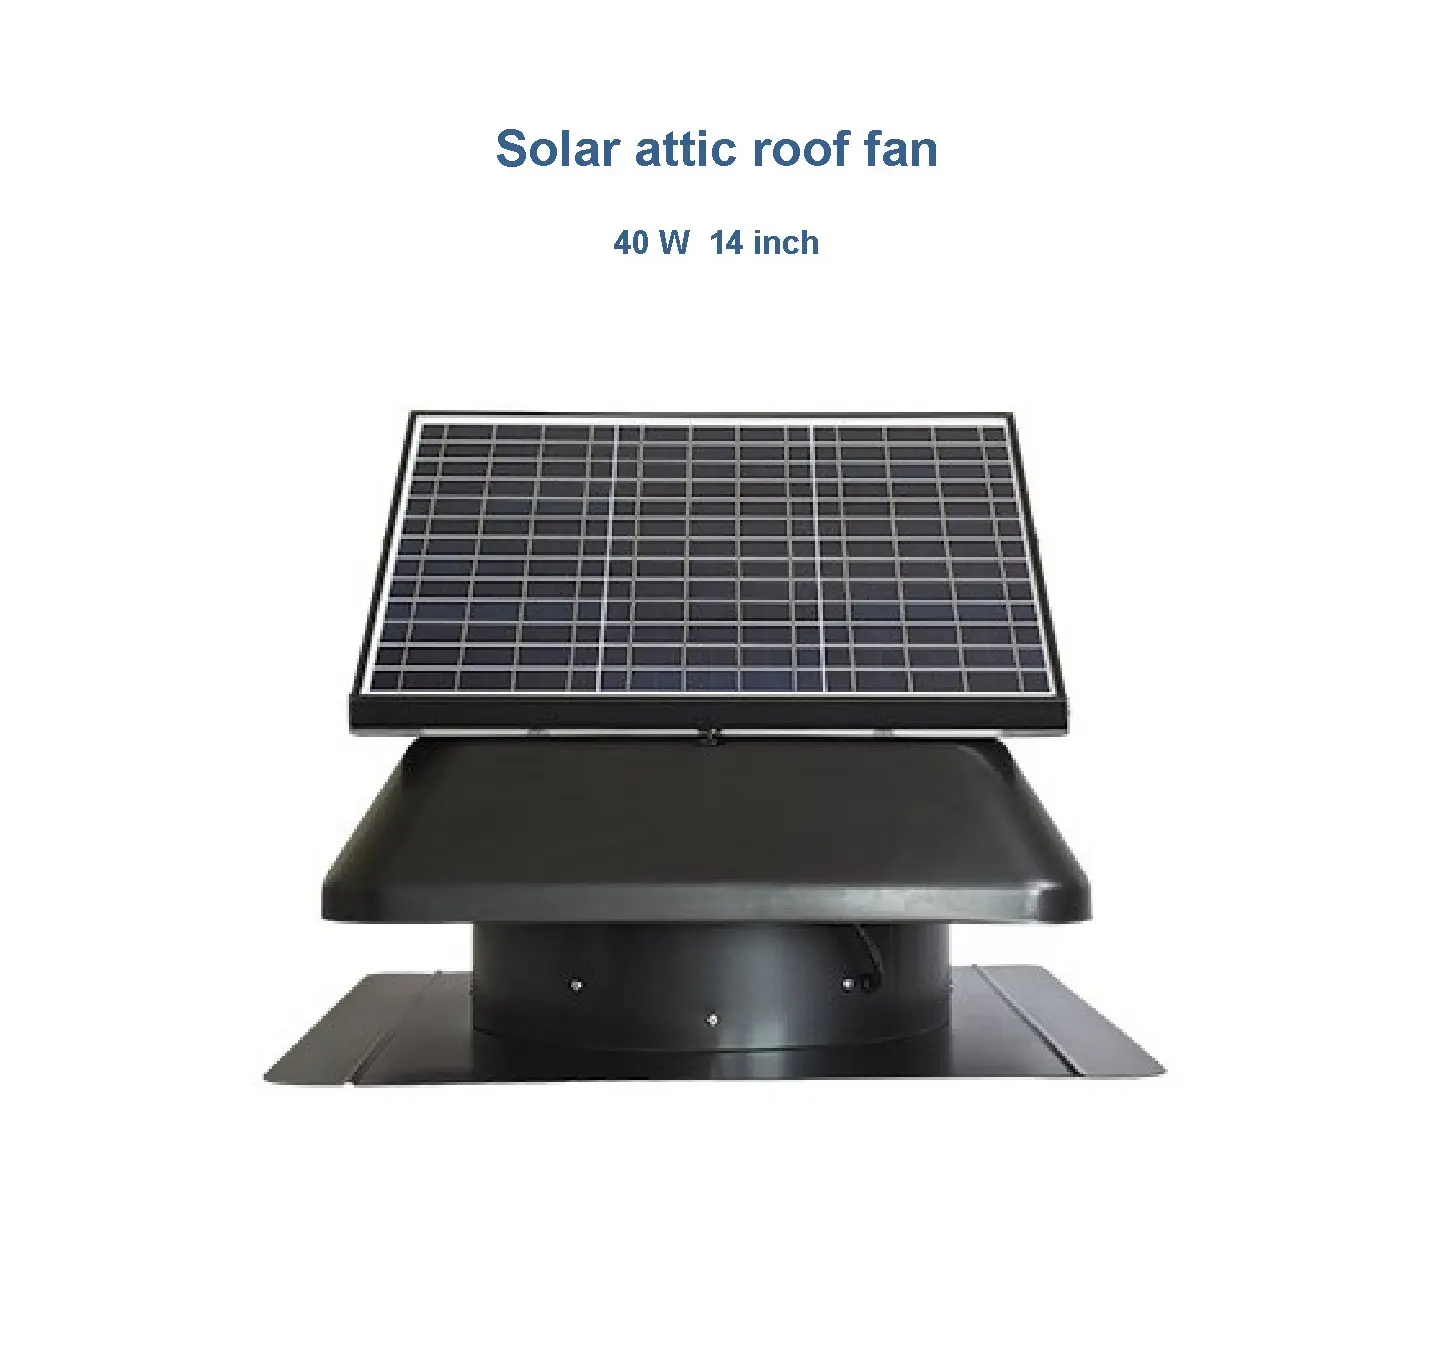 Вентиляционные комплекты Солнечная панель солнечная панель вентилятор постоянного тока Солнечная система потолочный вентилятор